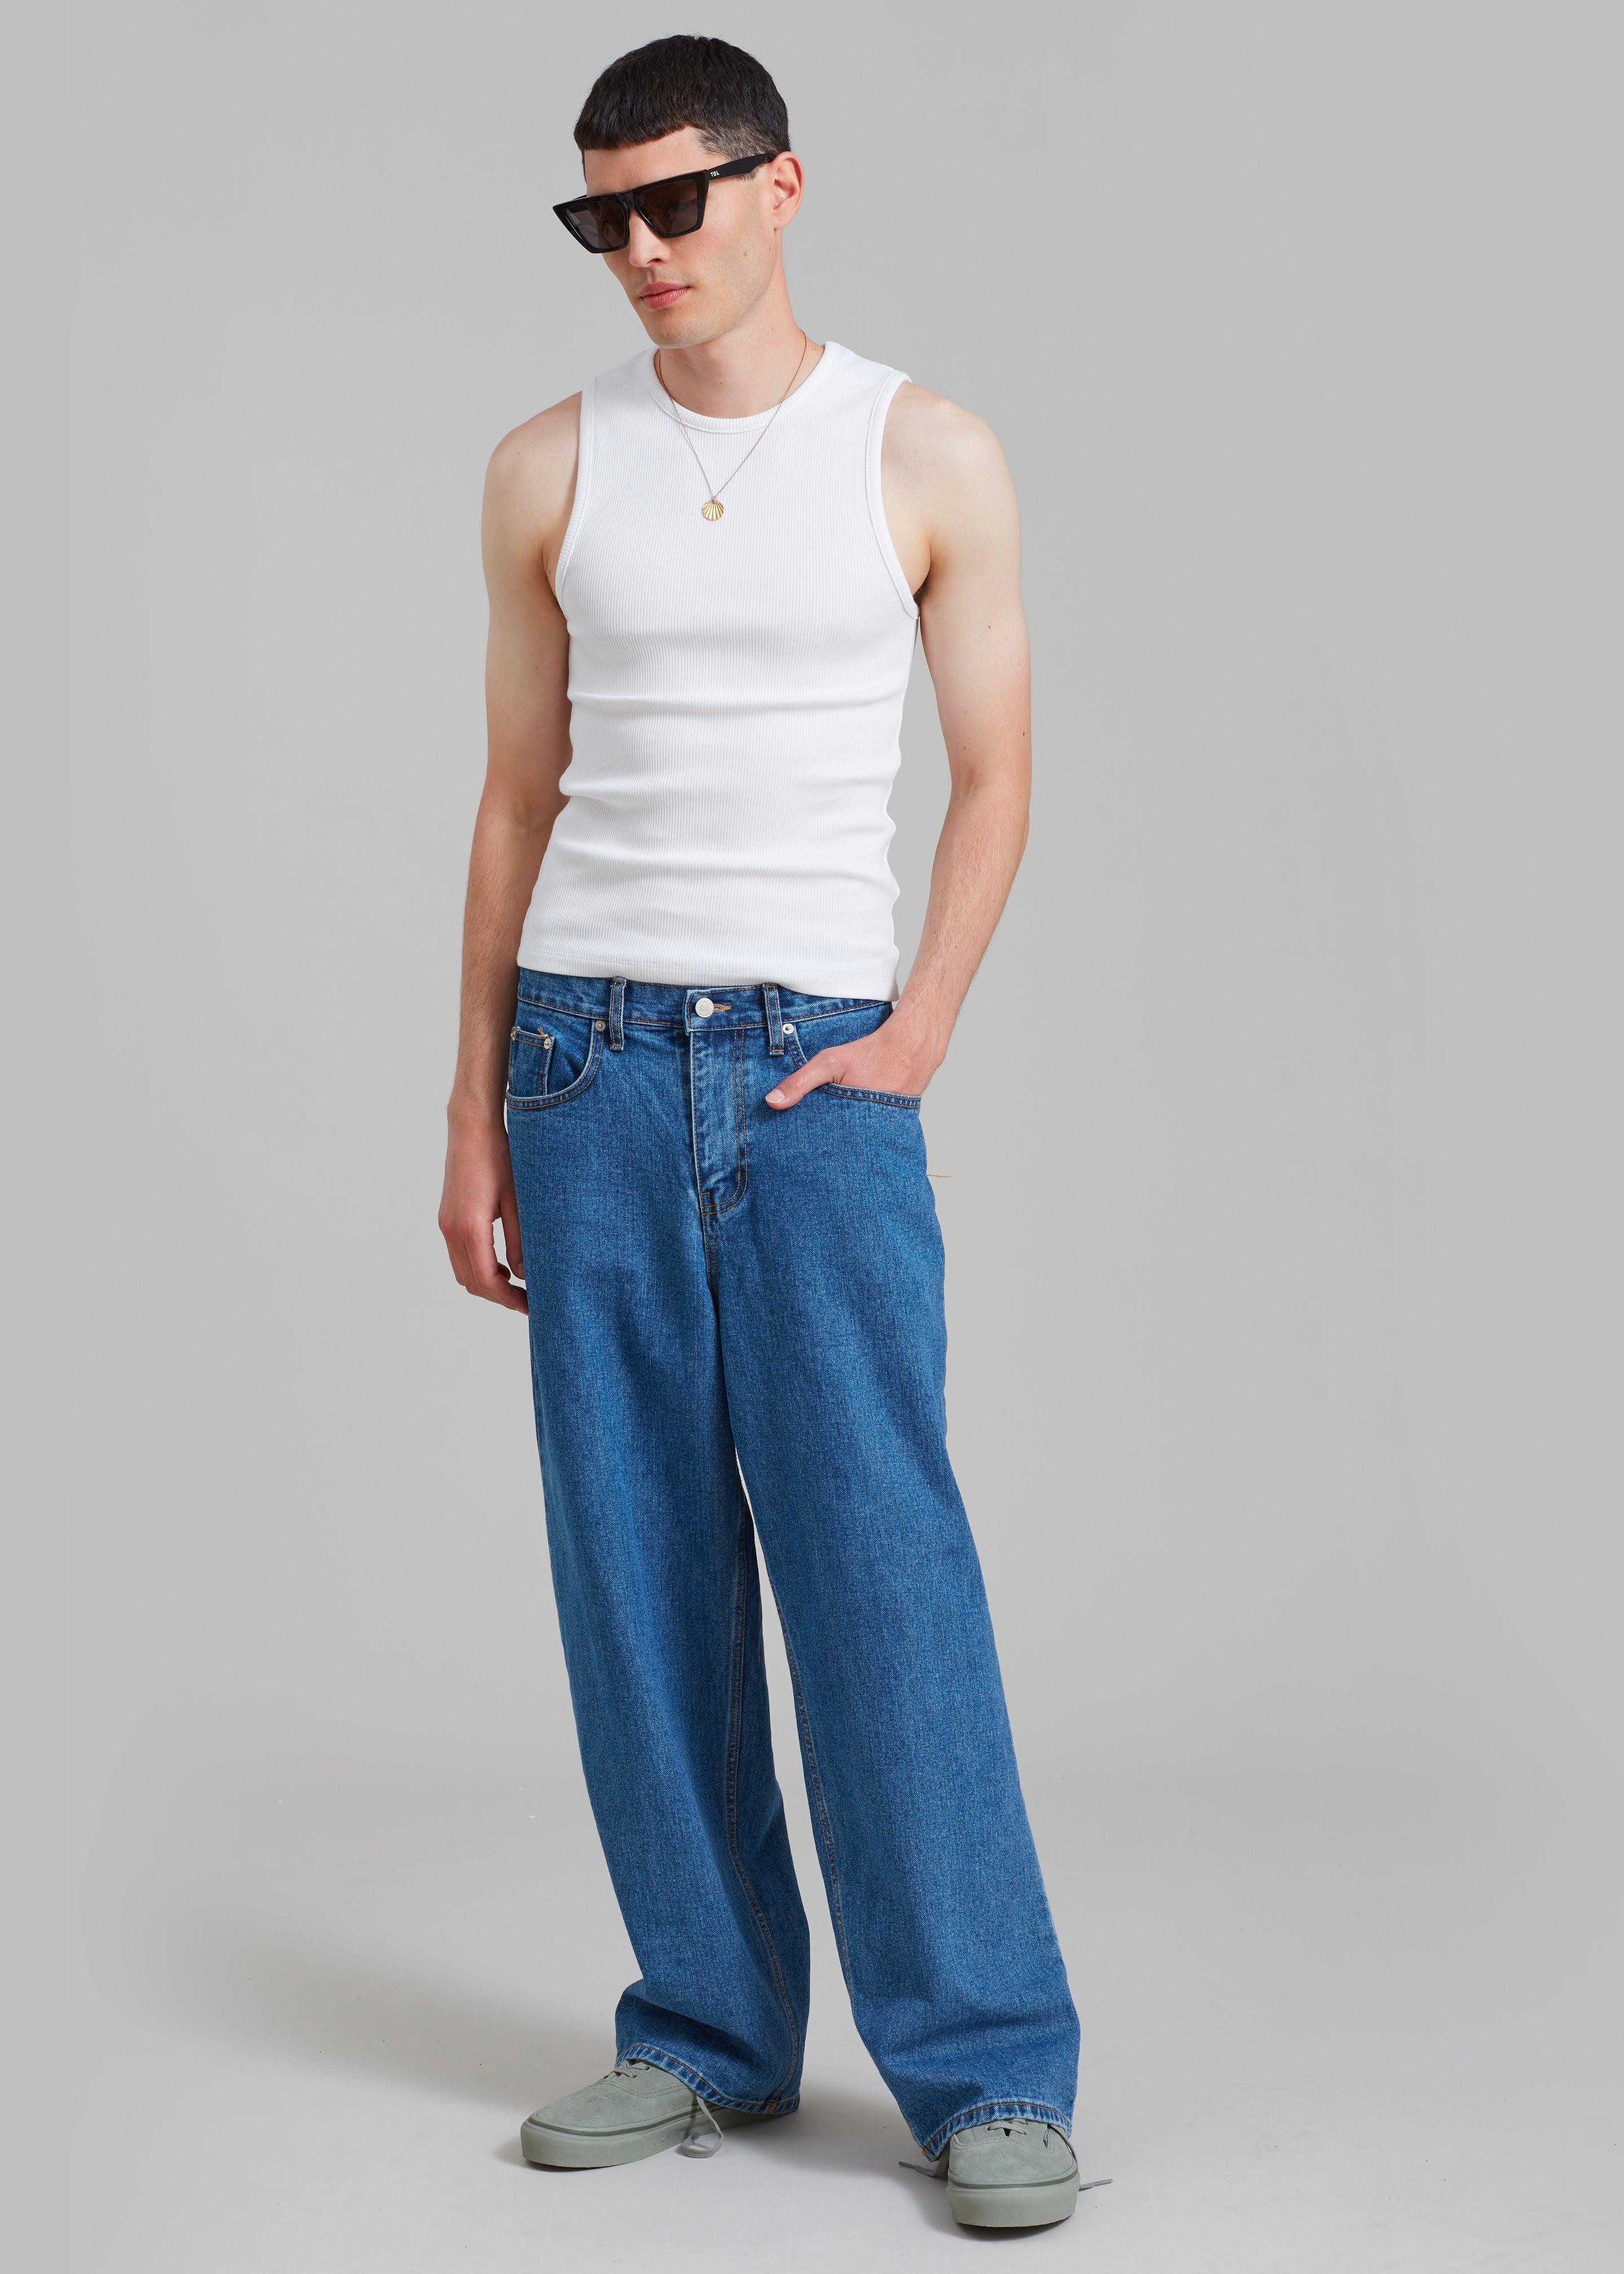 Connor Jeans - Medium Wash - 5